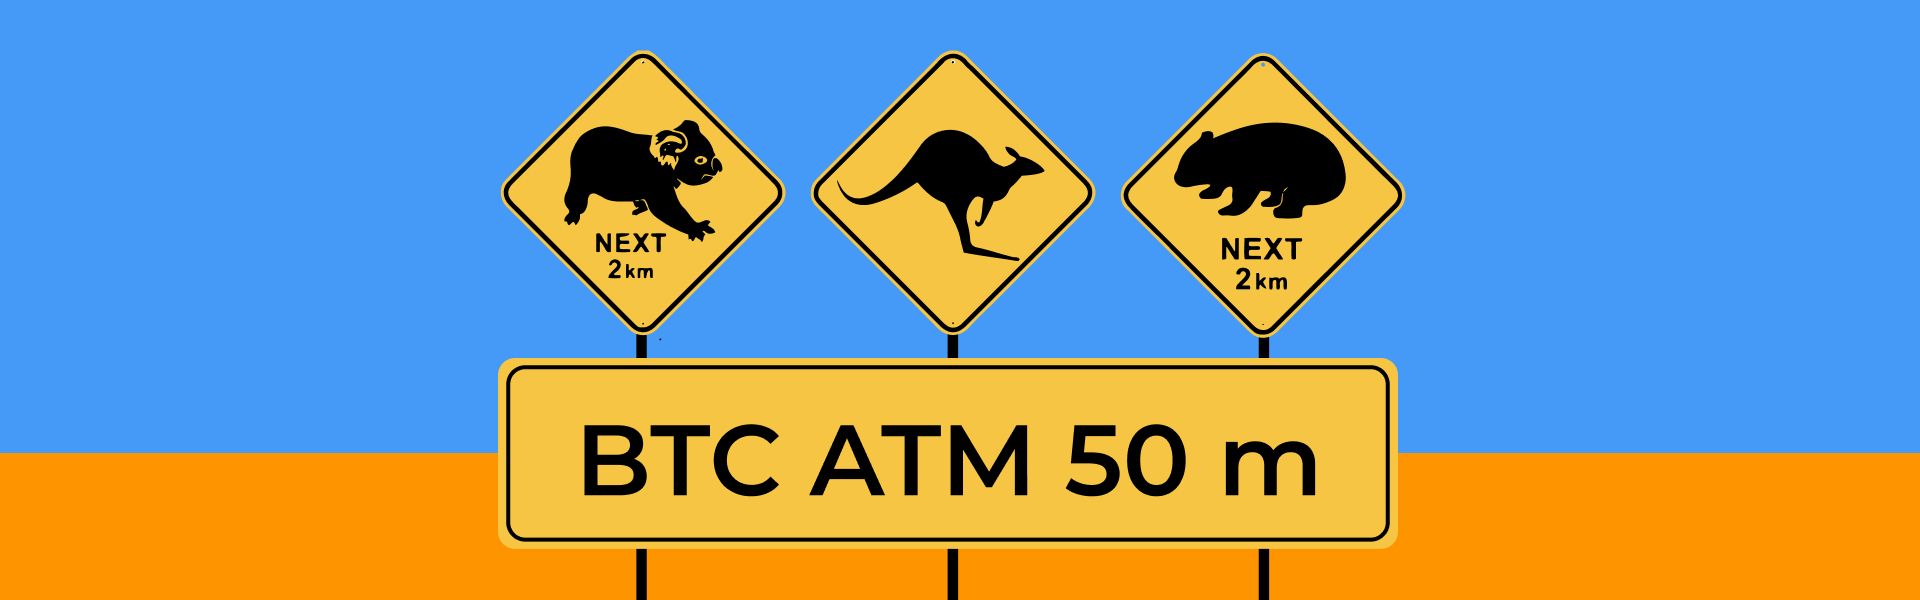 В Австралії вже більш ніж 1000 біткоїн-банкоматів